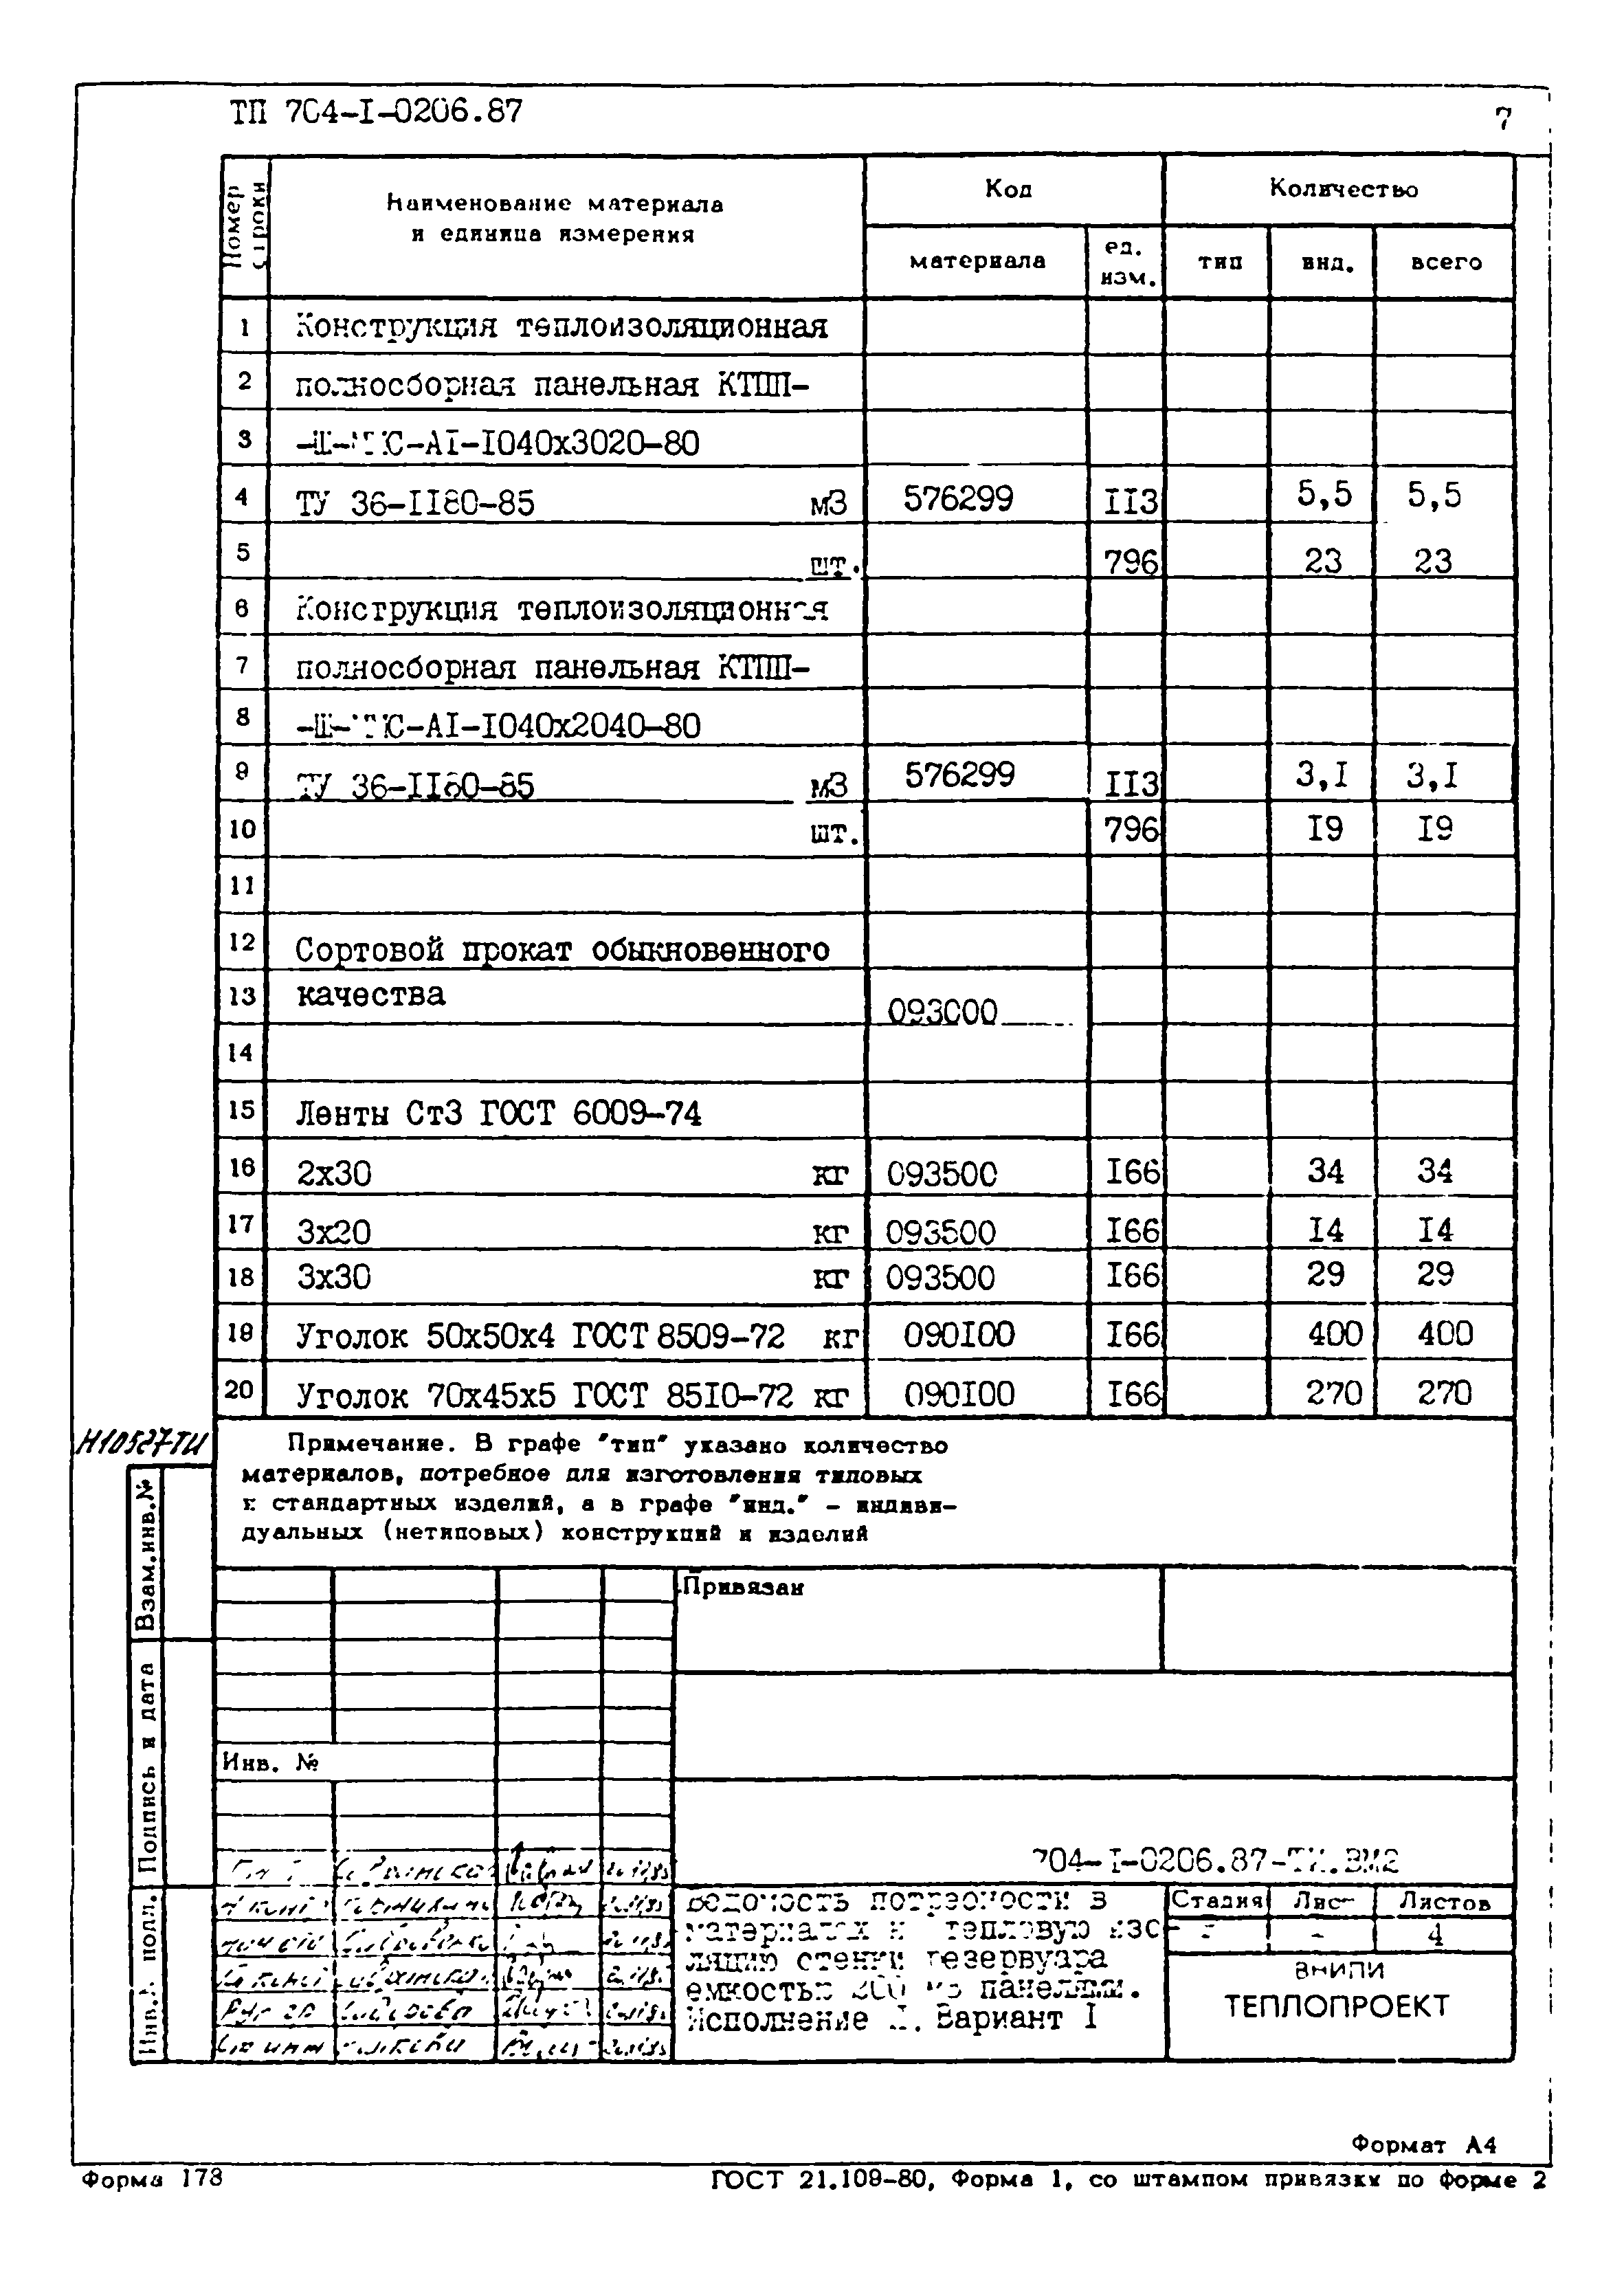 Типовые проектные решения 704-1-0206.87